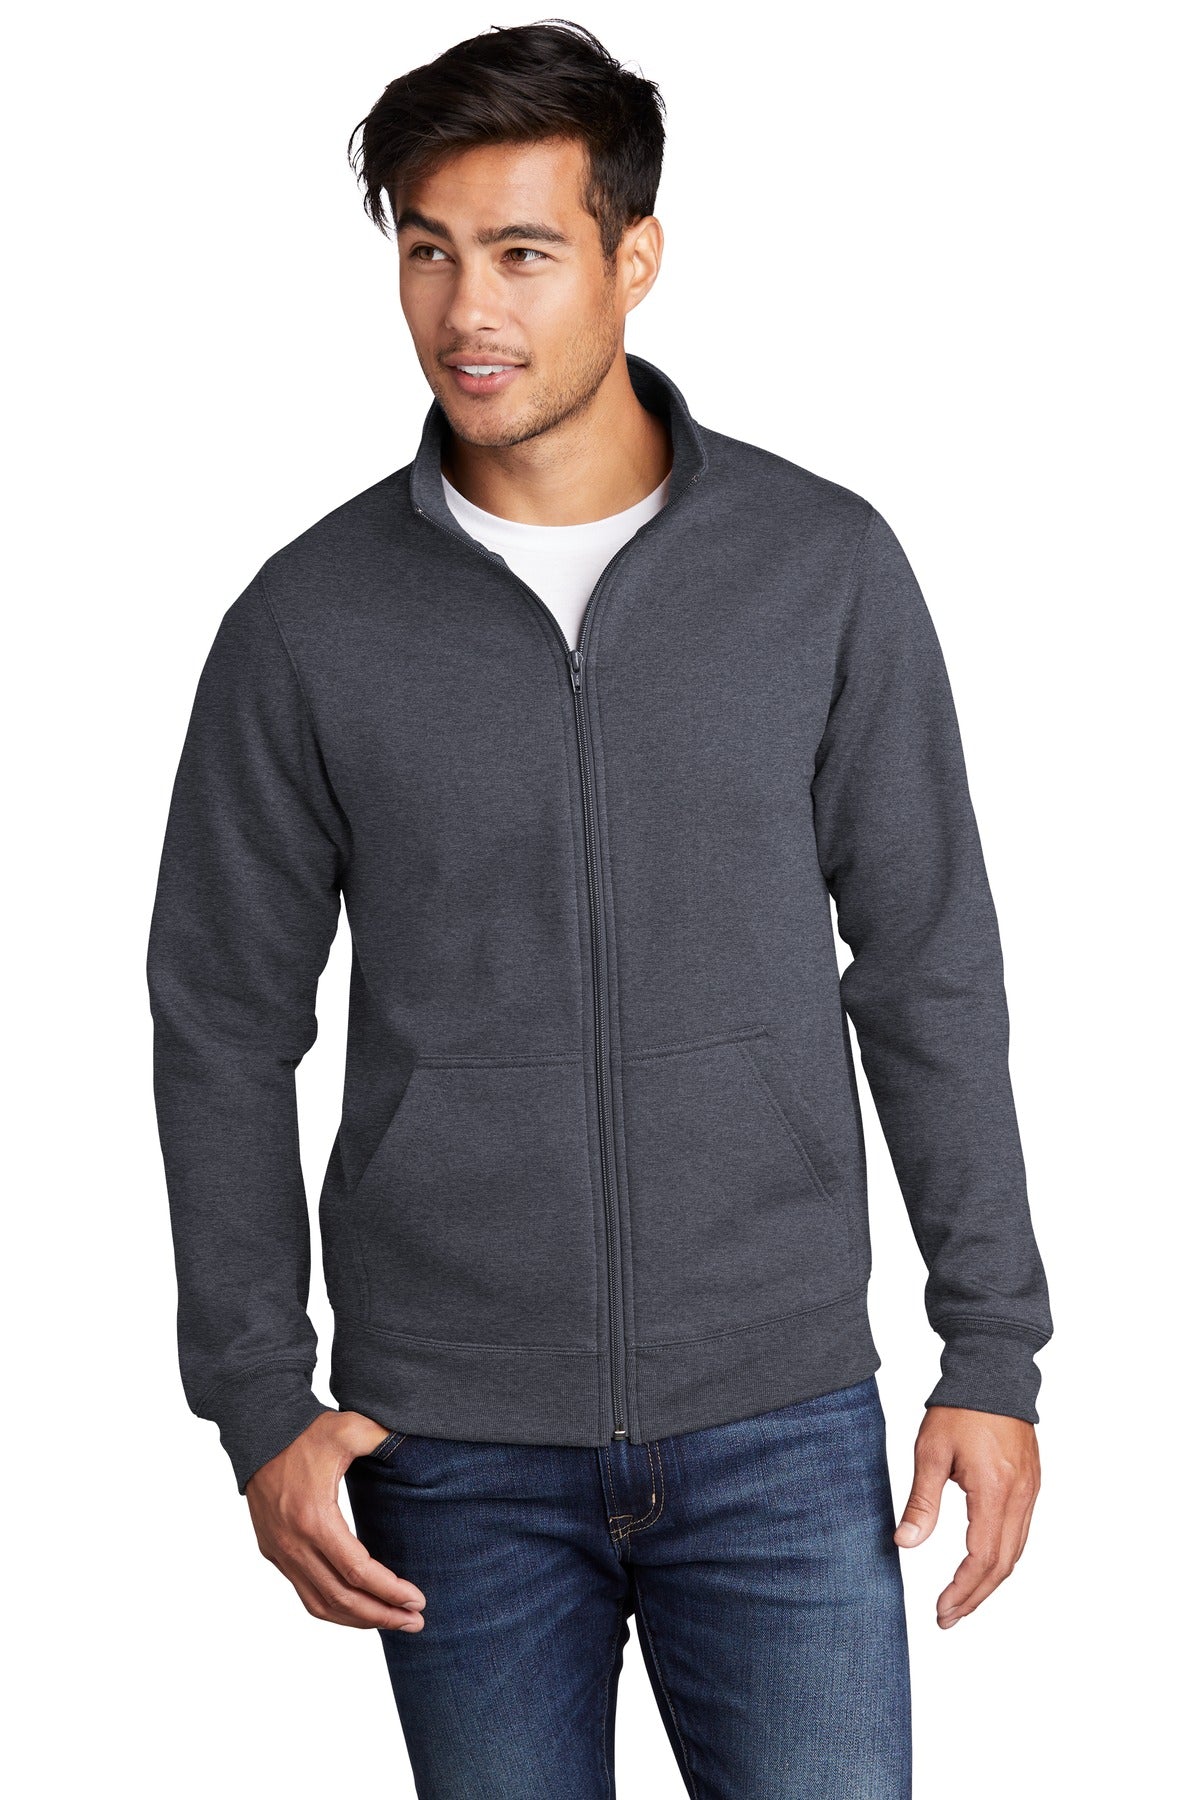 Sweatshirts/Fleece Heather Navy Port & Company